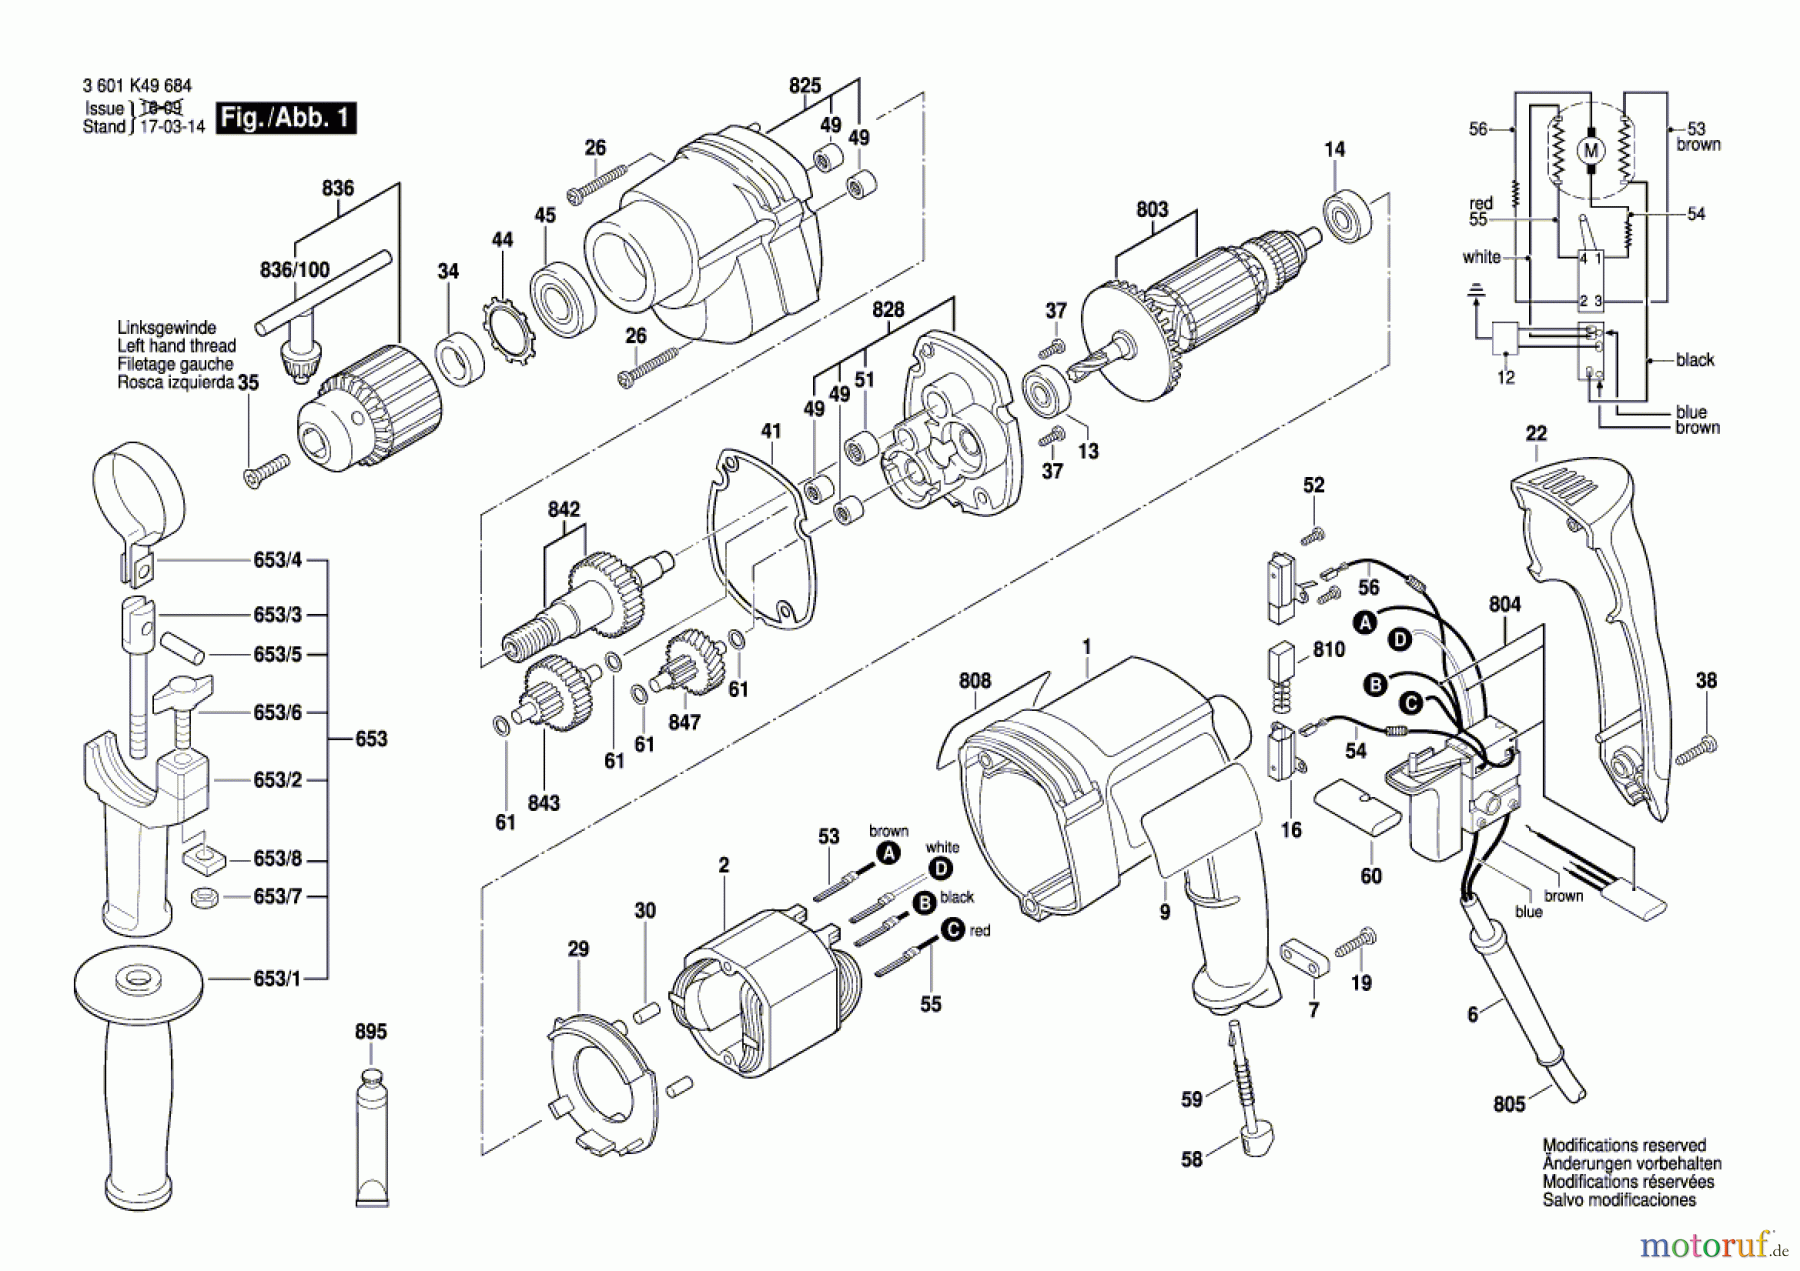  Bosch Werkzeug Bohrmaschine BM 550 E Seite 1